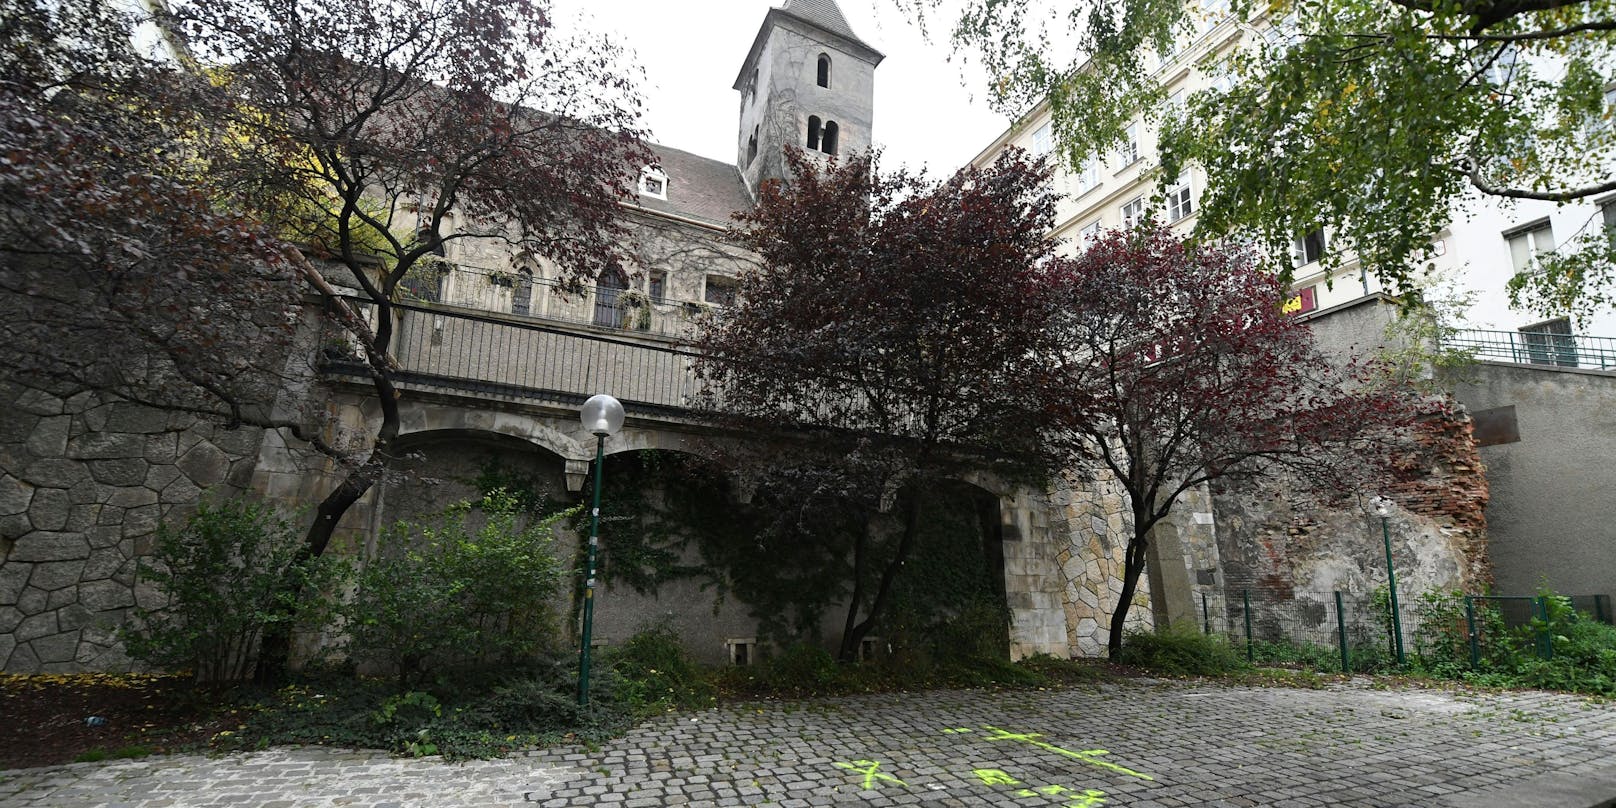 Vor der Ruprechtskirche – dem ältesten Gotteshaus Wiens – wurde der Attentäter erschossen.